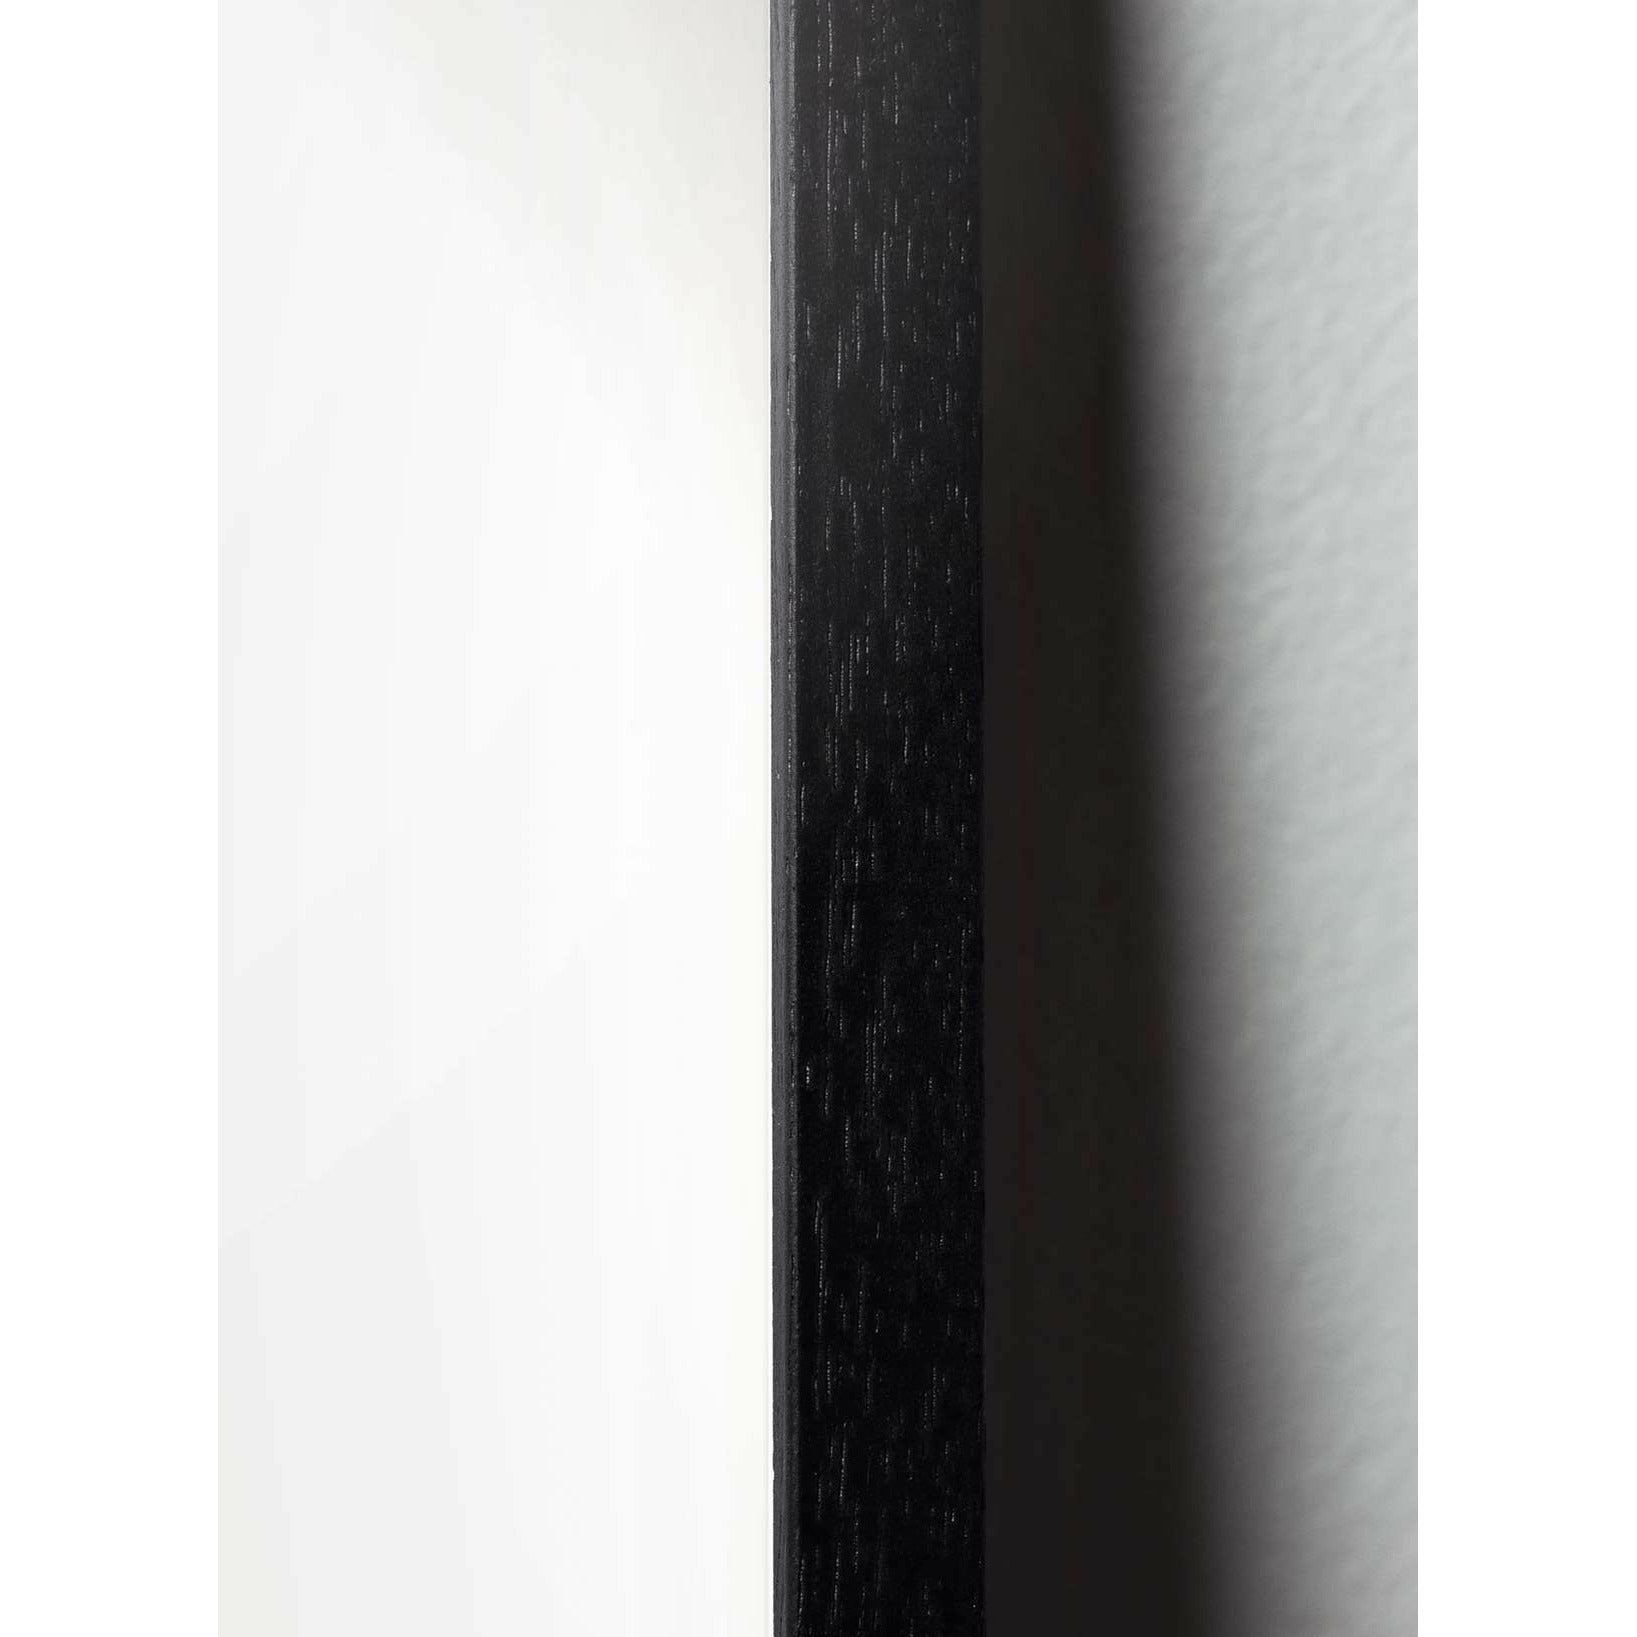 Klasický plakát Brainchild Drop, rám v černém lakovaném dřevu 70x100 cm, černé pozadí